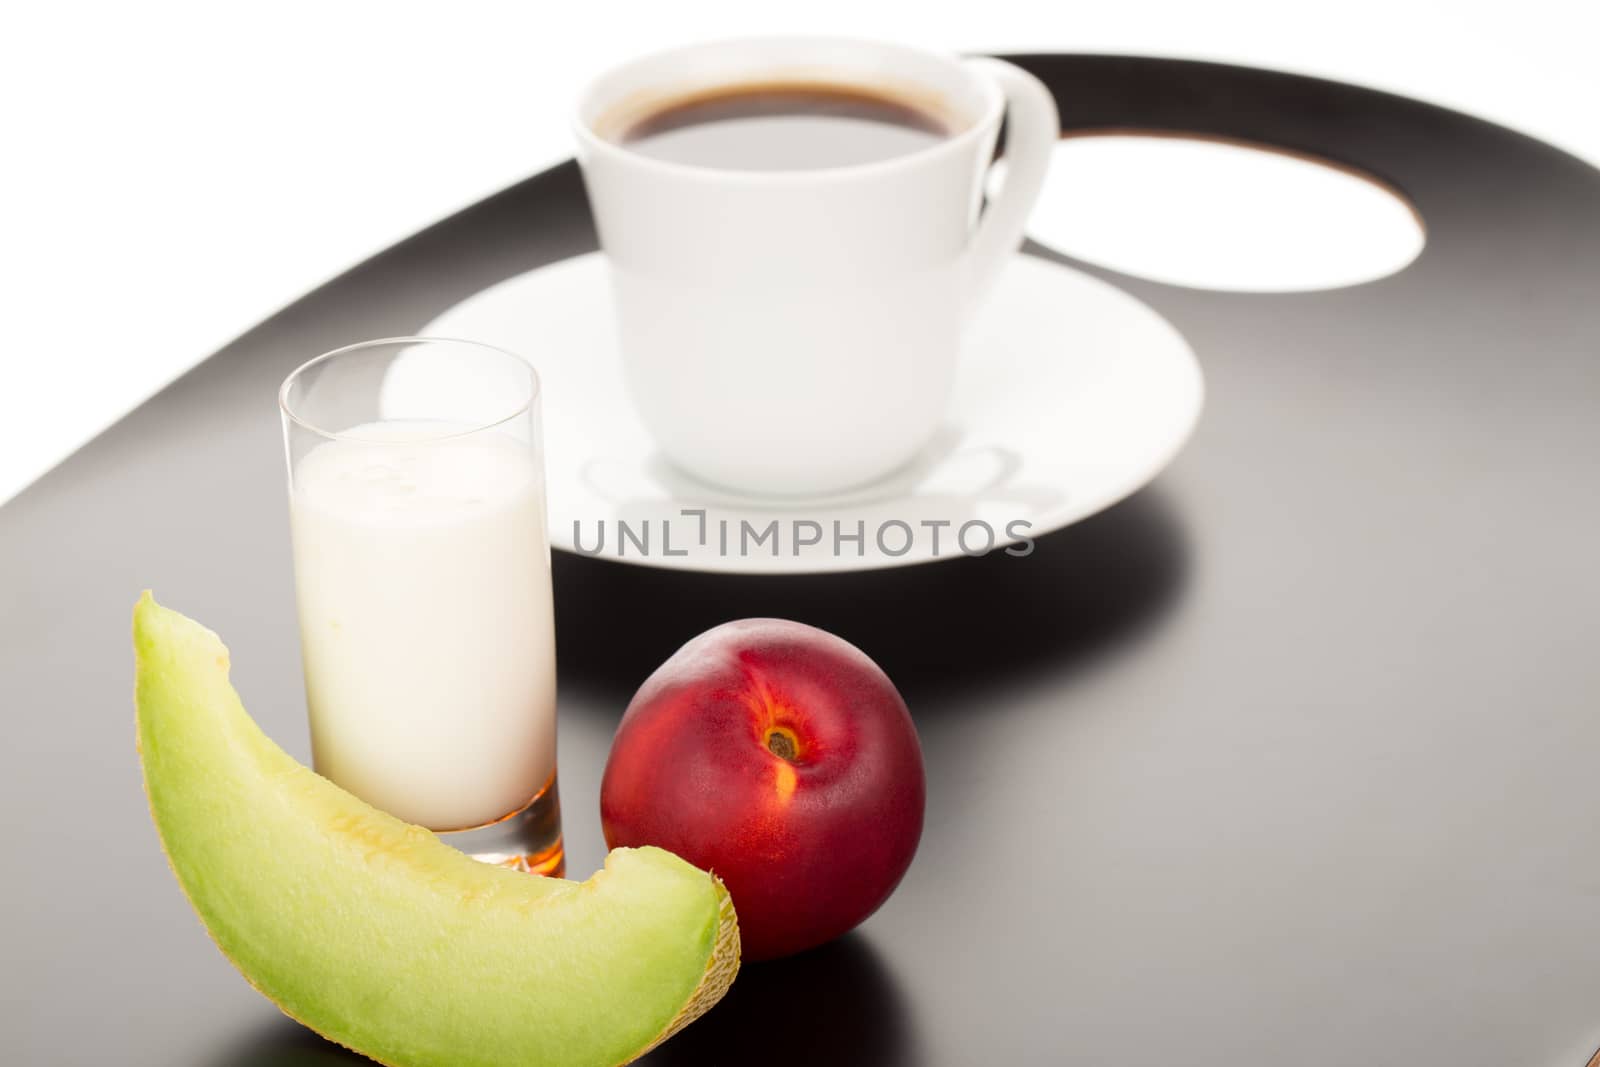 Healthy breakfast by lusjen_n